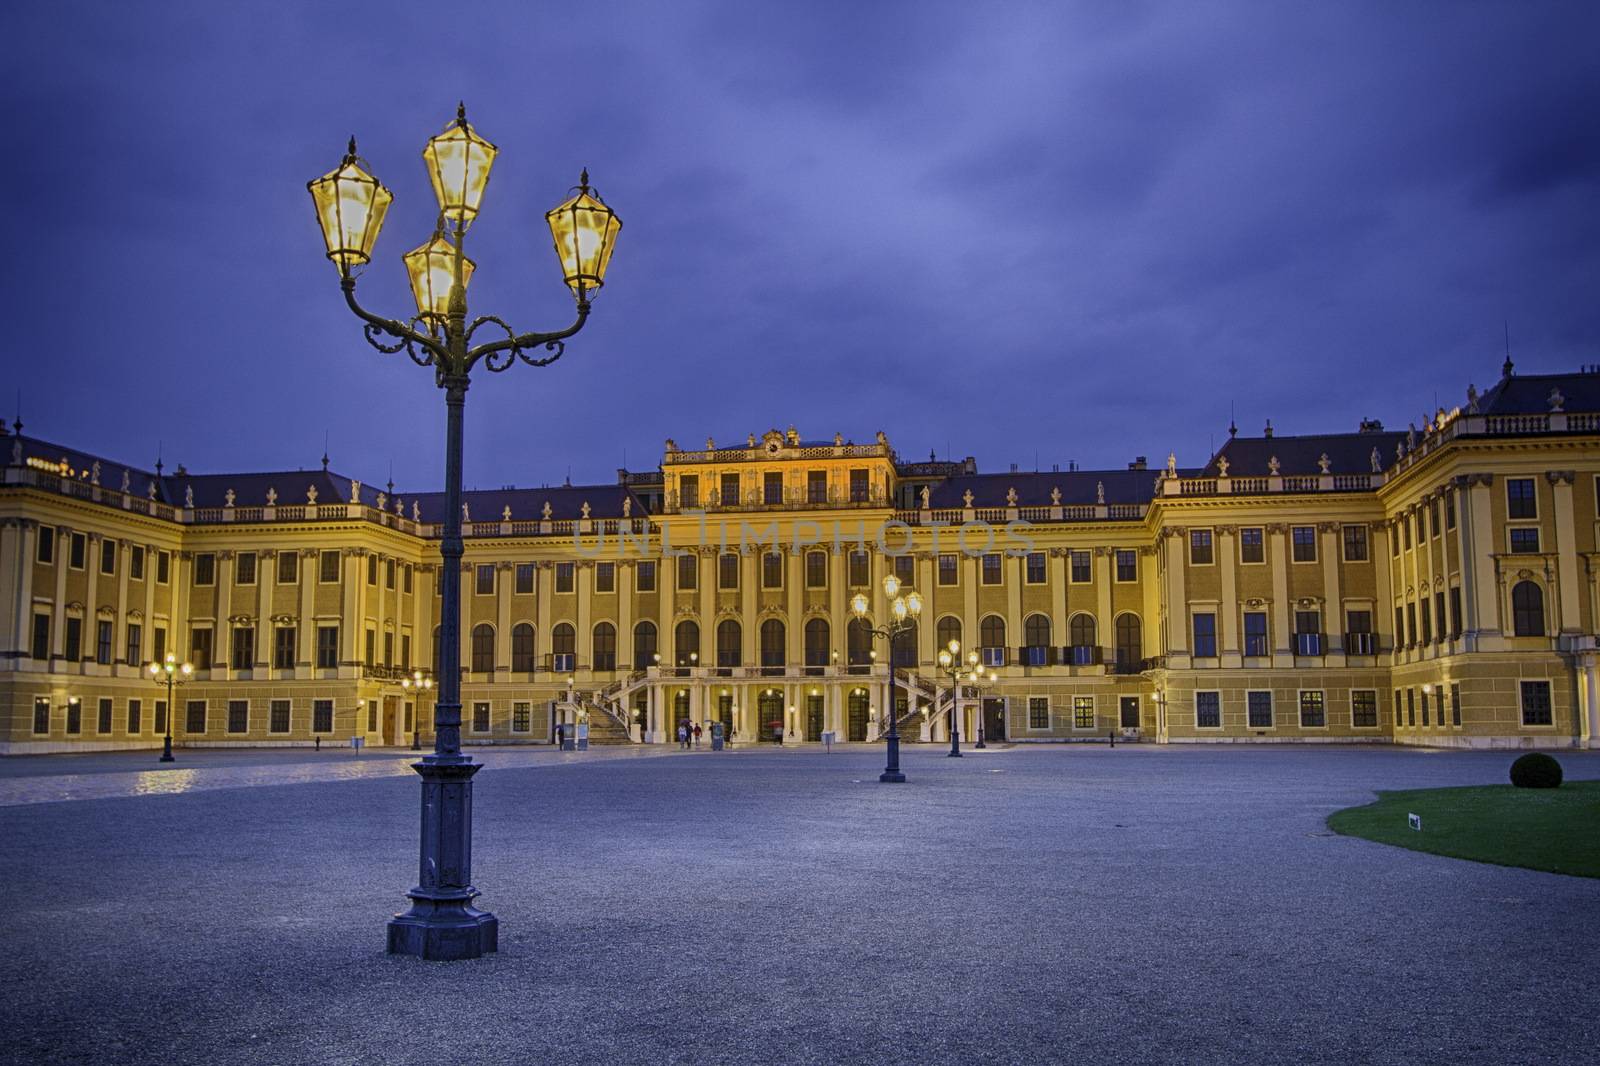 Schonbrunn Palace in Vienna, Austria by mariephotos